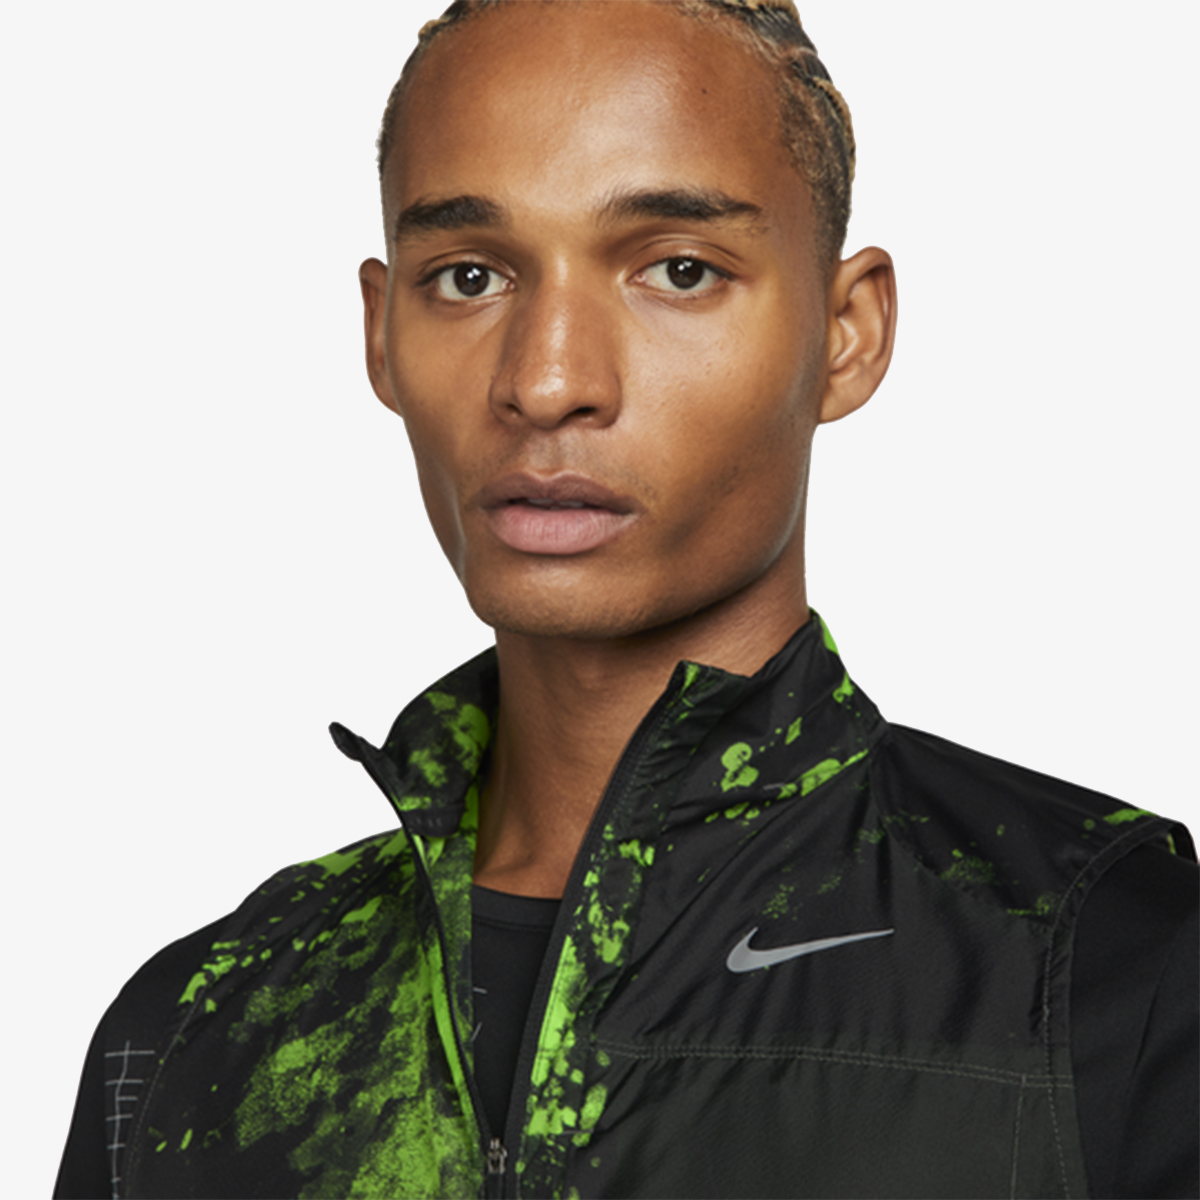 Nike Repel Run Division 